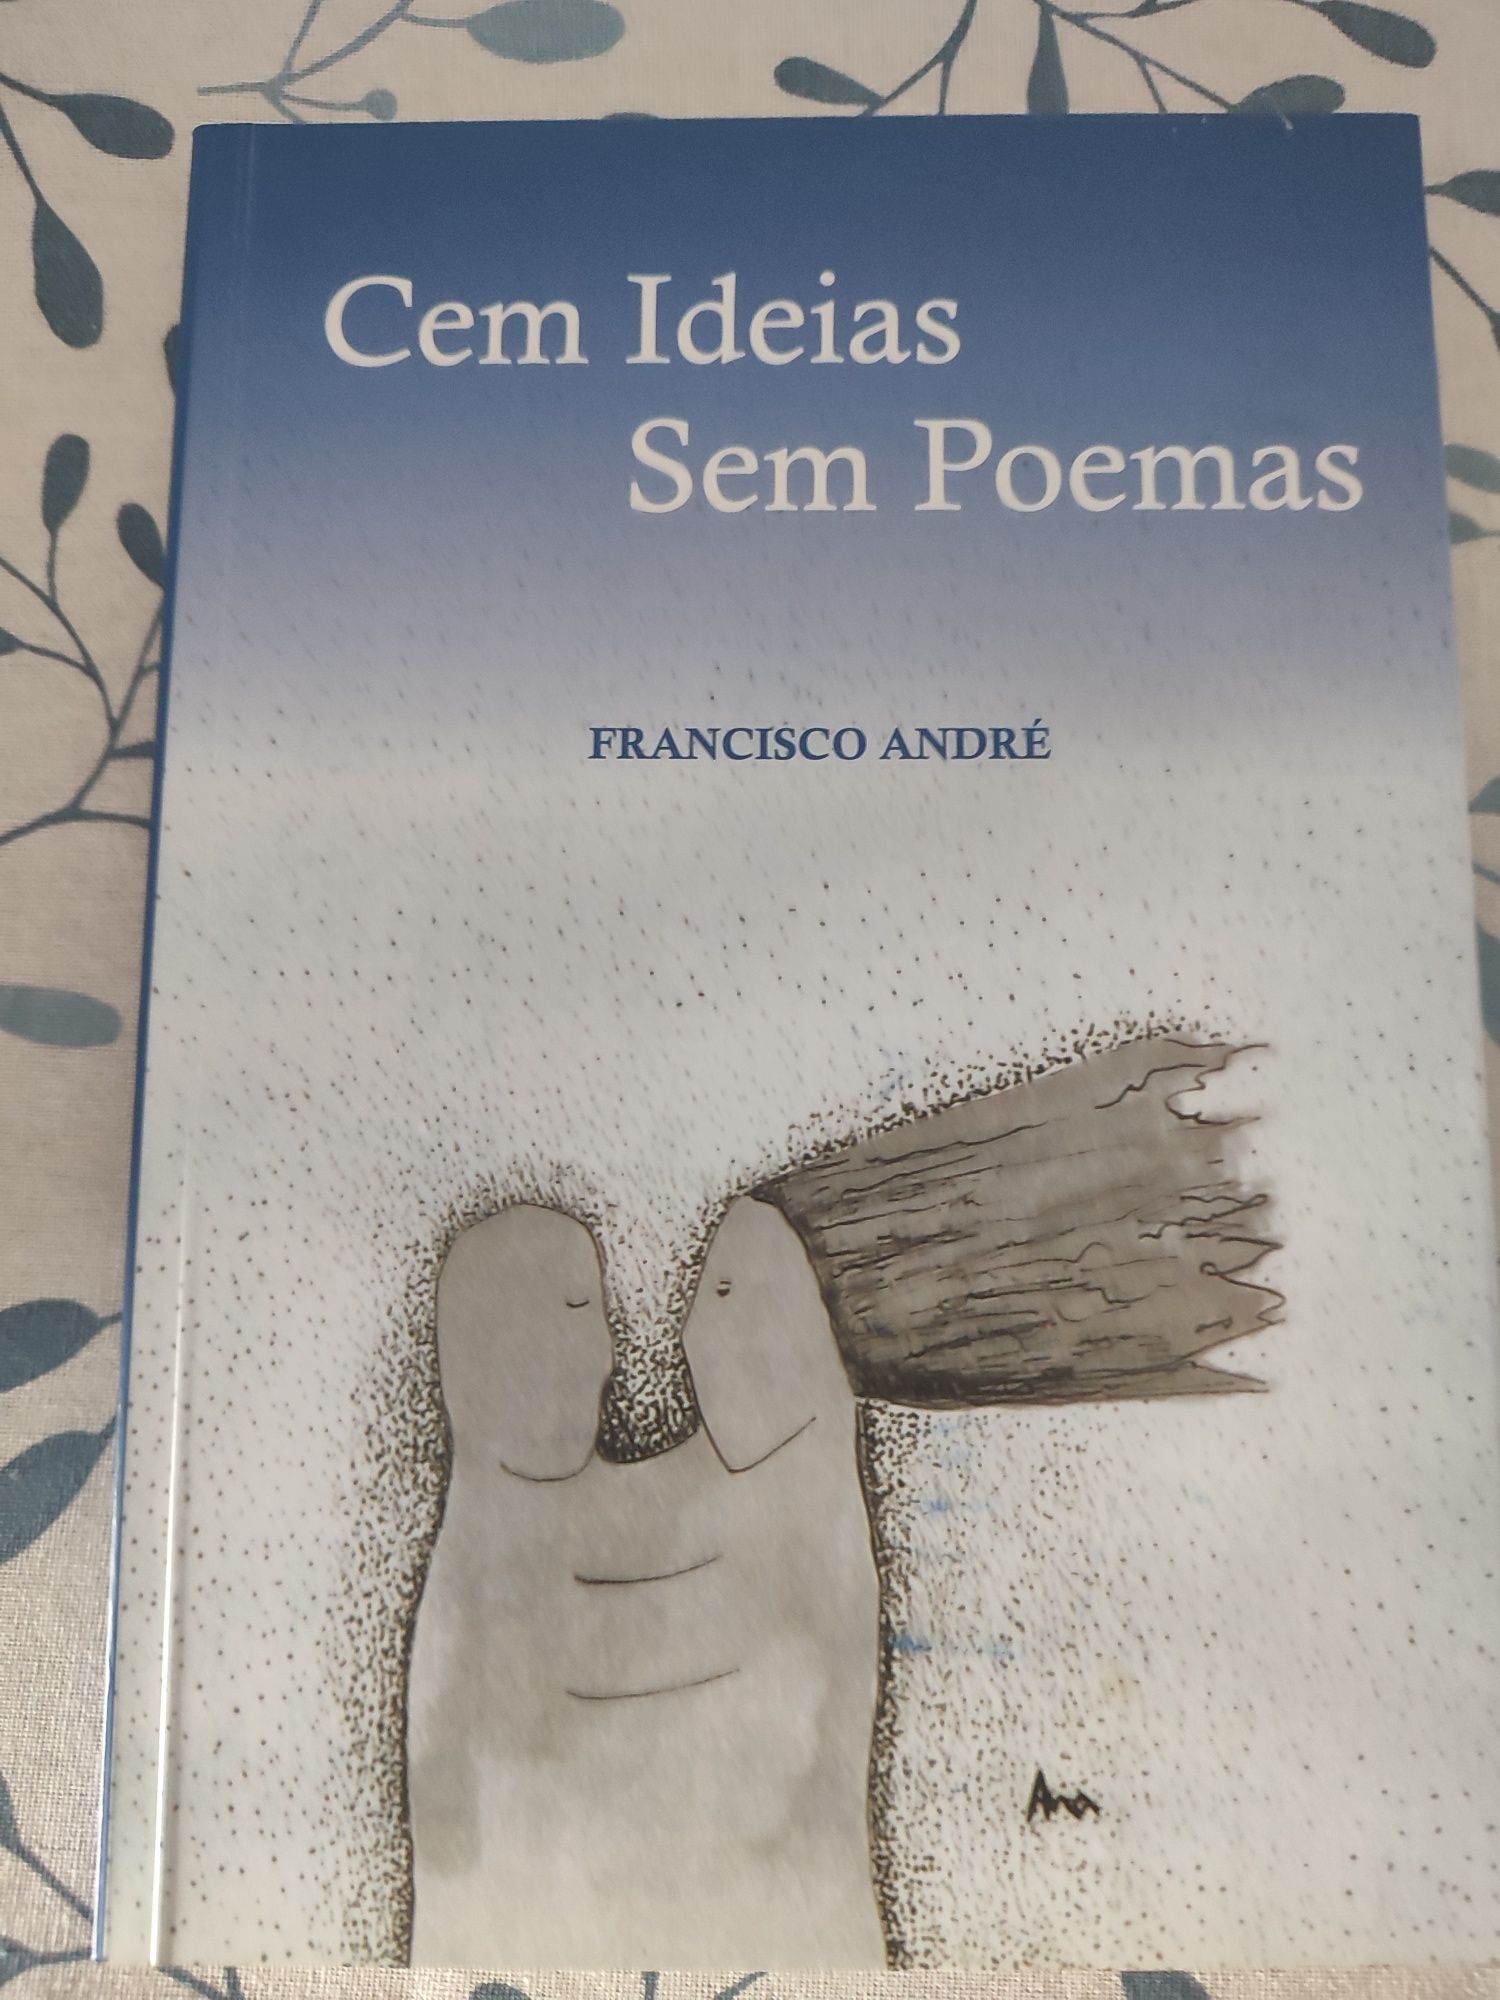 Vendo livro de poesia " Cem ideias sem poemas"